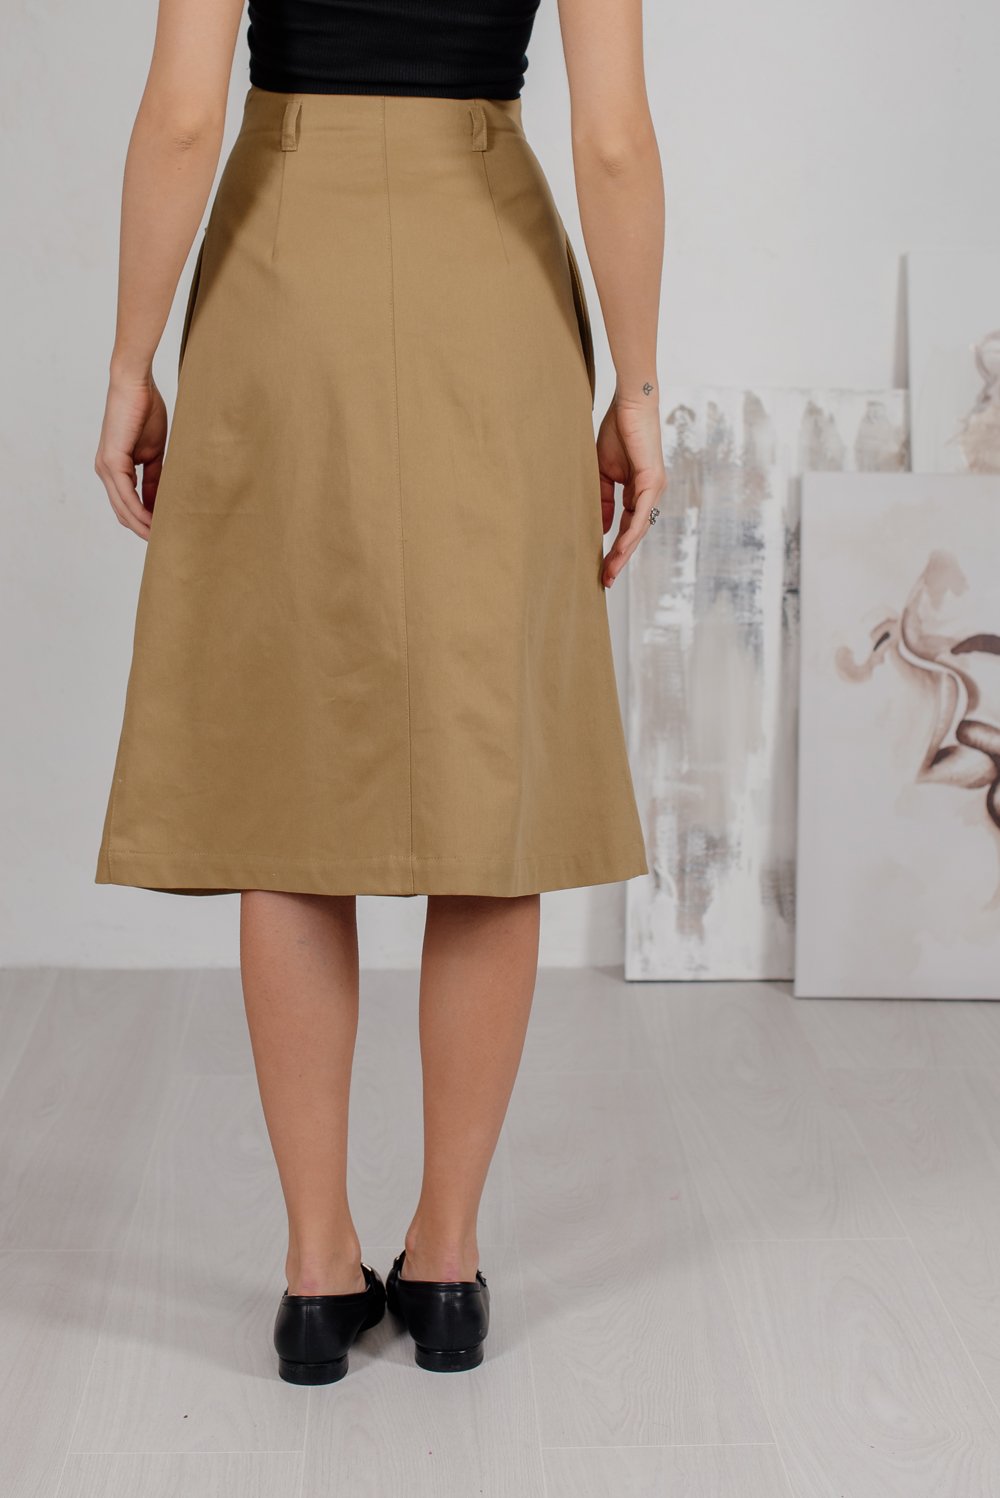 Buttoned midi skirt in safari style